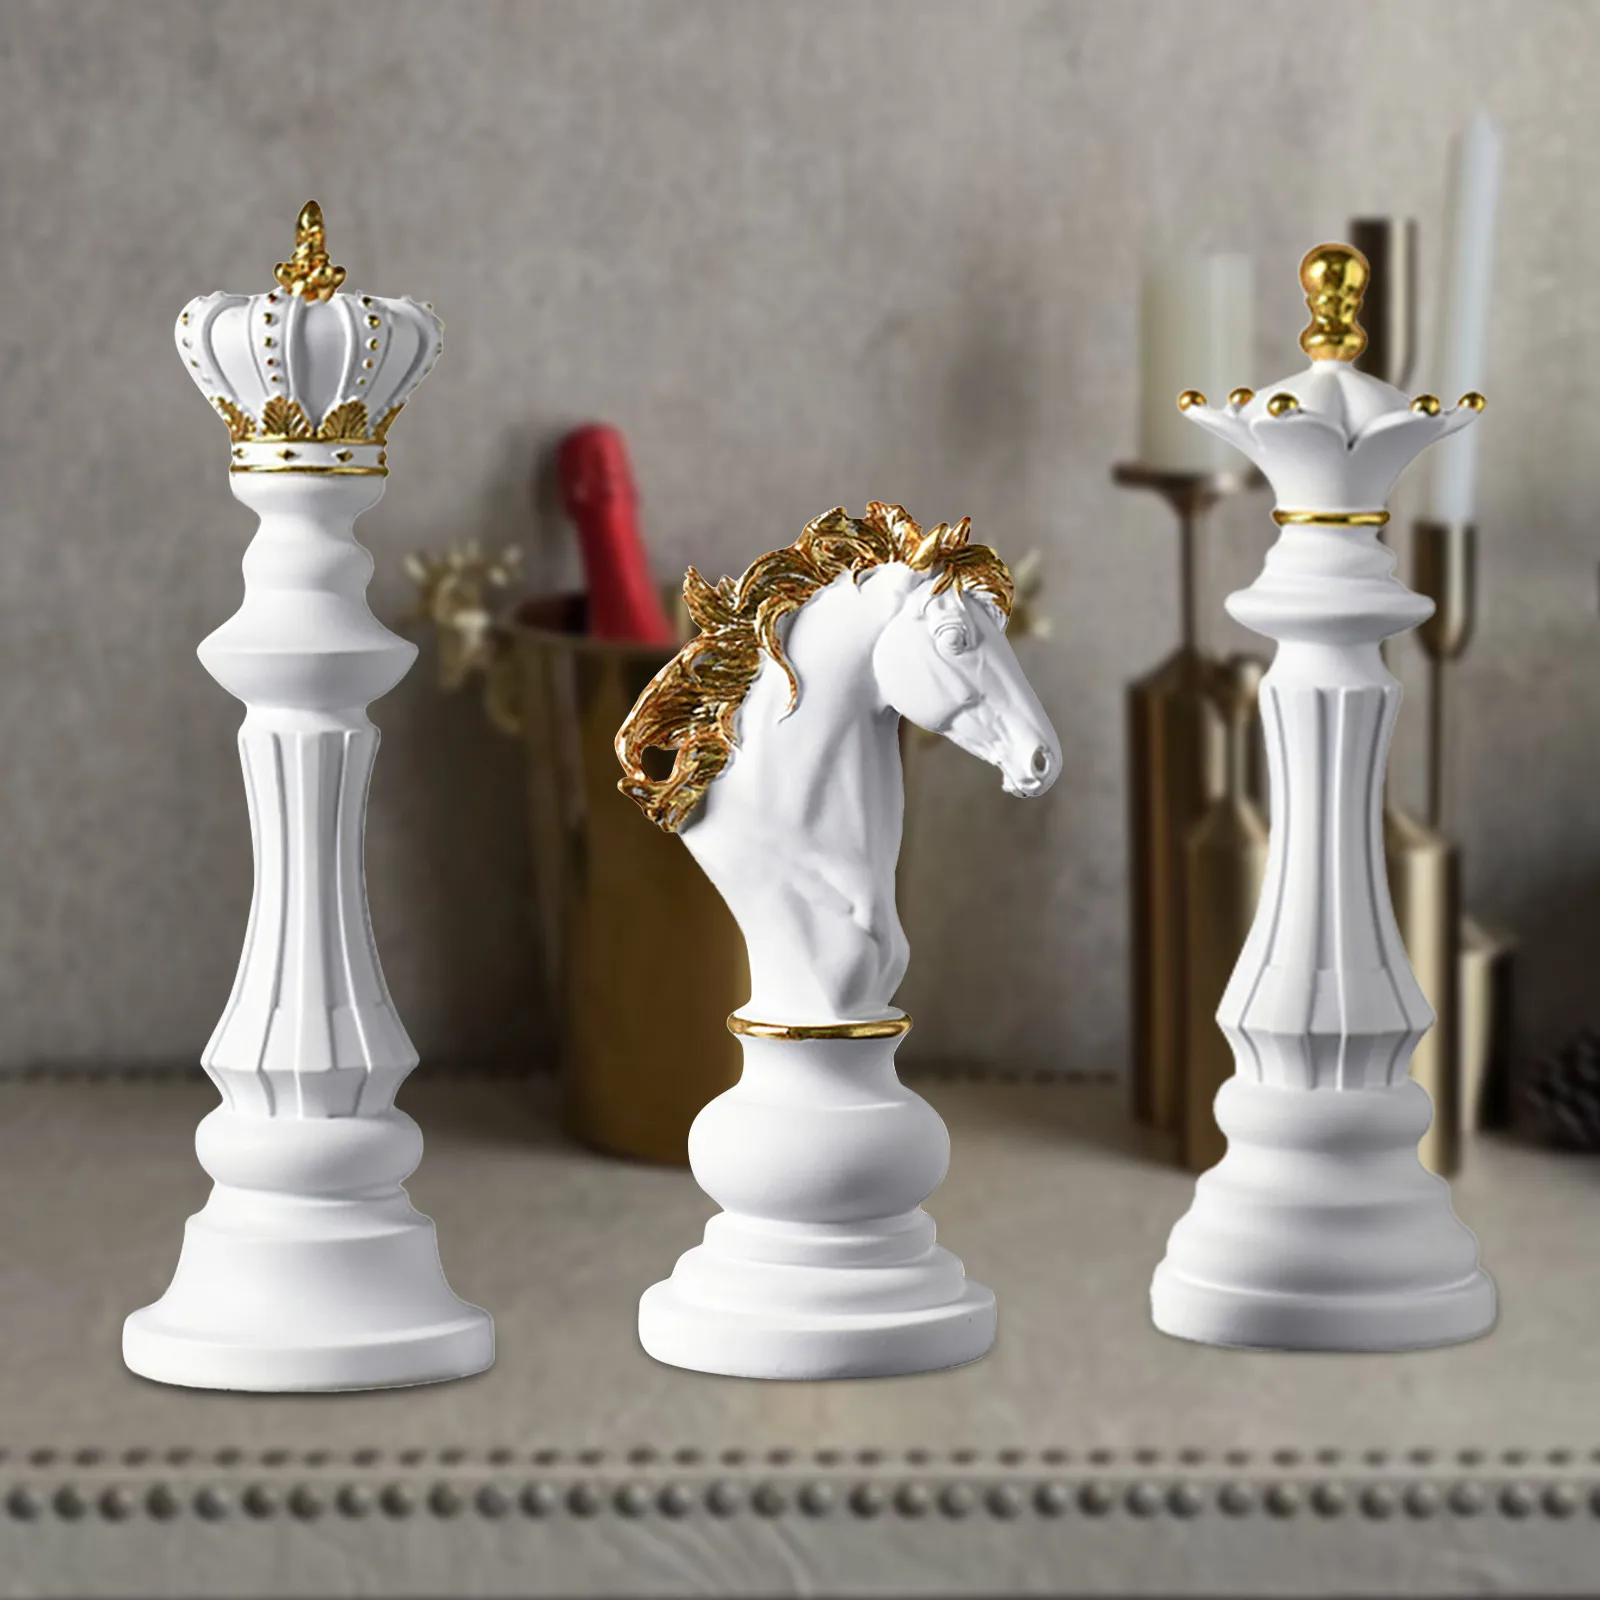 

Шахматы Kinges королева рыцарь статуя скульптура предметы декора семейный дом Декор международные Шахматные фигурки Ретро домашний Dec